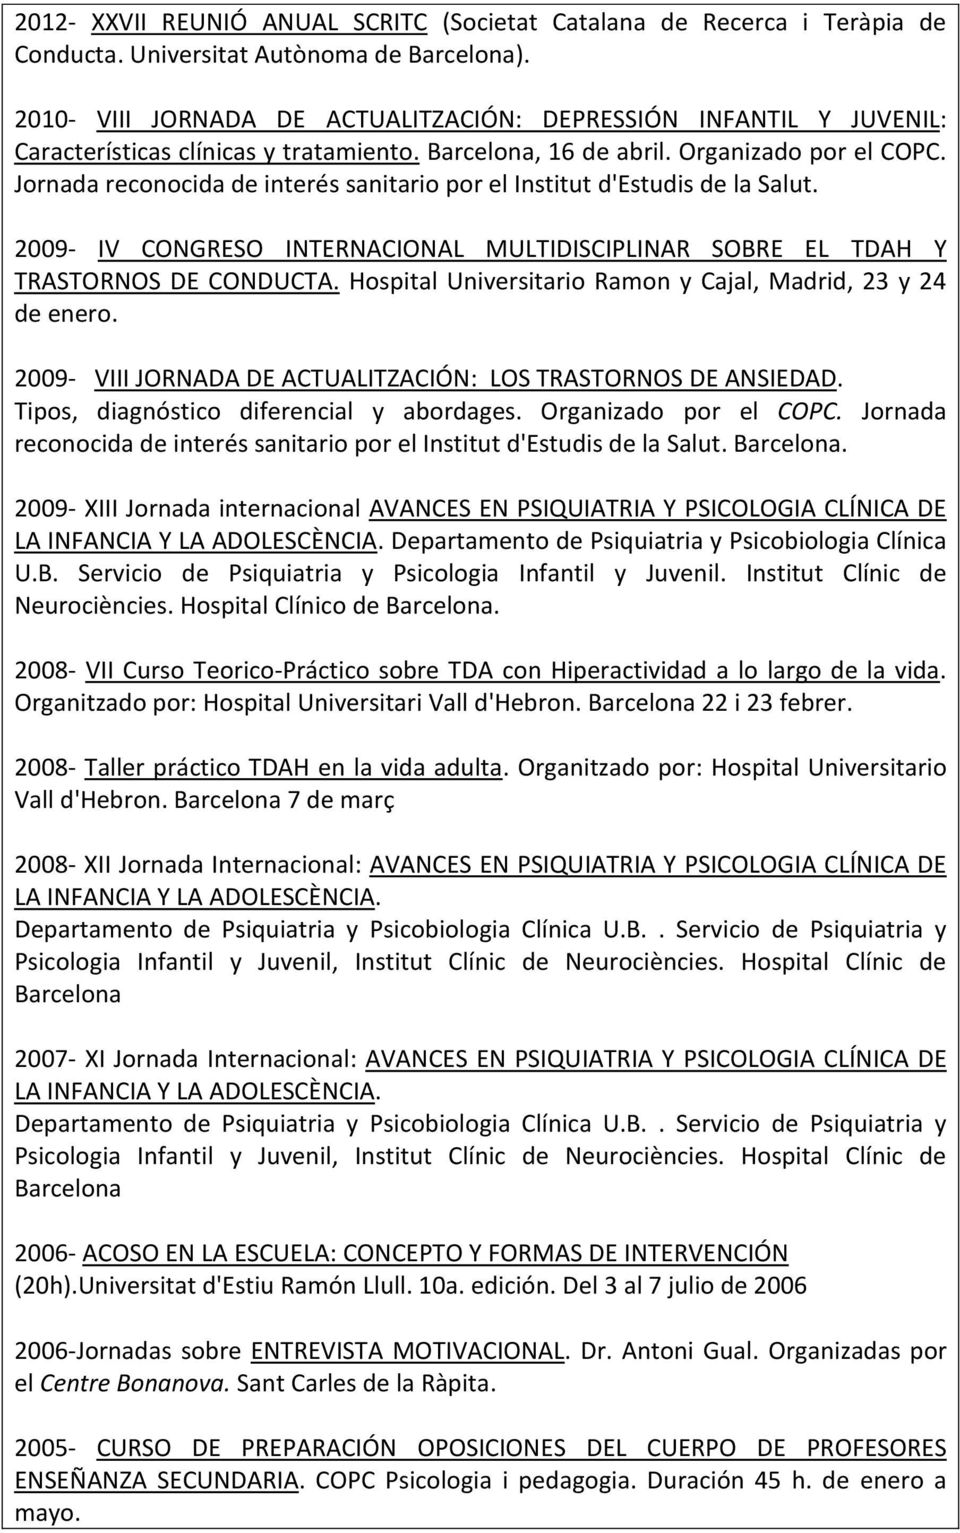 2009- IV CONGRESO INTERNACIONAL MULTIDISCIPLINAR SOBRE EL TDAH Y TRASTORNOS DE CONDUCTA. Hospital Universitario Ramon y Cajal, Madrid, 23 y 24 de enero.